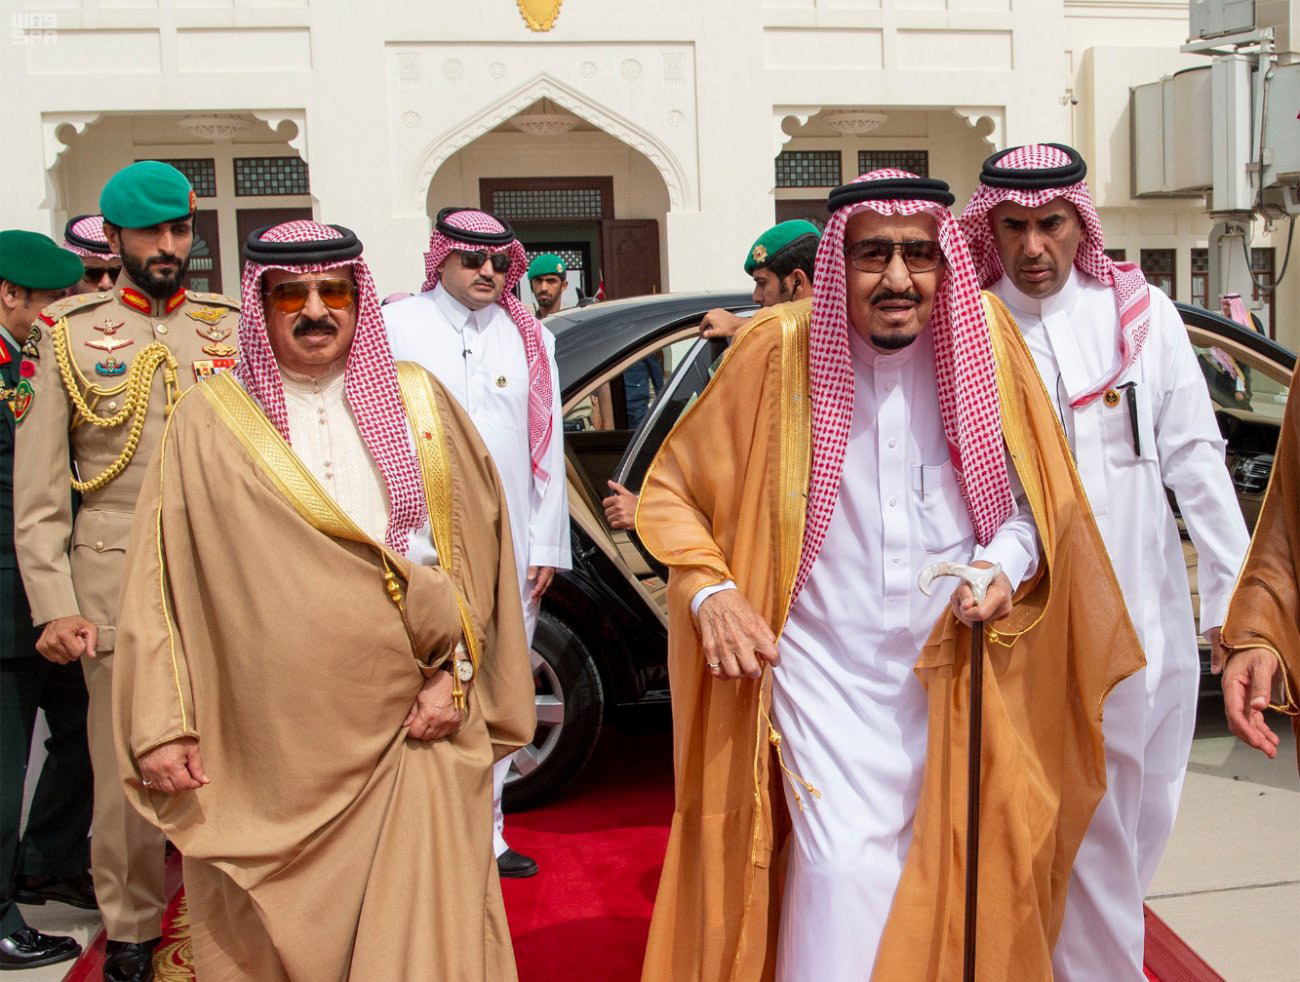 دعم سعودي متواصل للبحرين يؤكد التعاون المتين بين البلدين الخليجيين